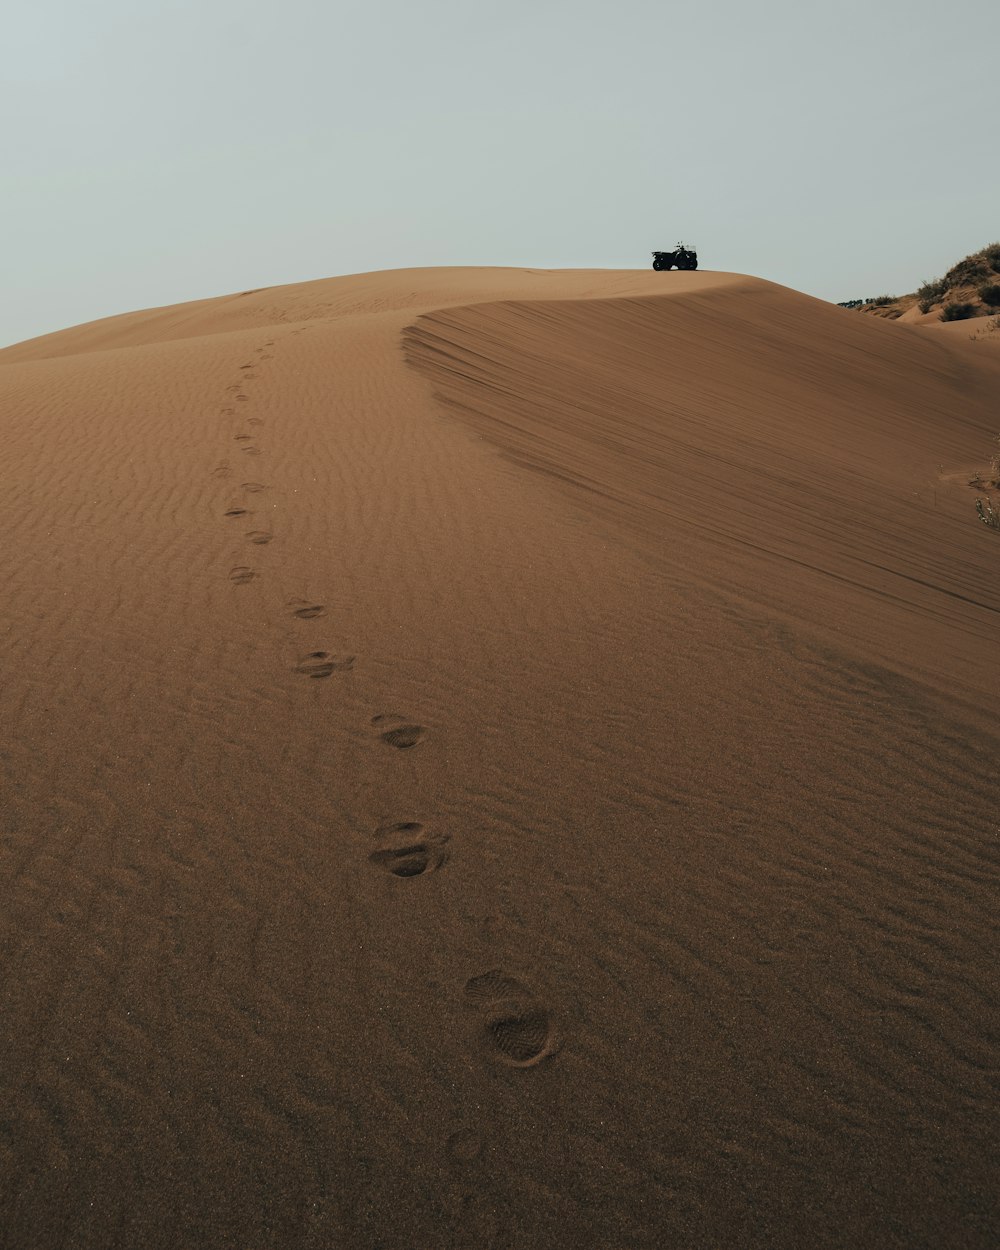 모래에 발자국이 있는 모래 언덕을 운전하는 지프